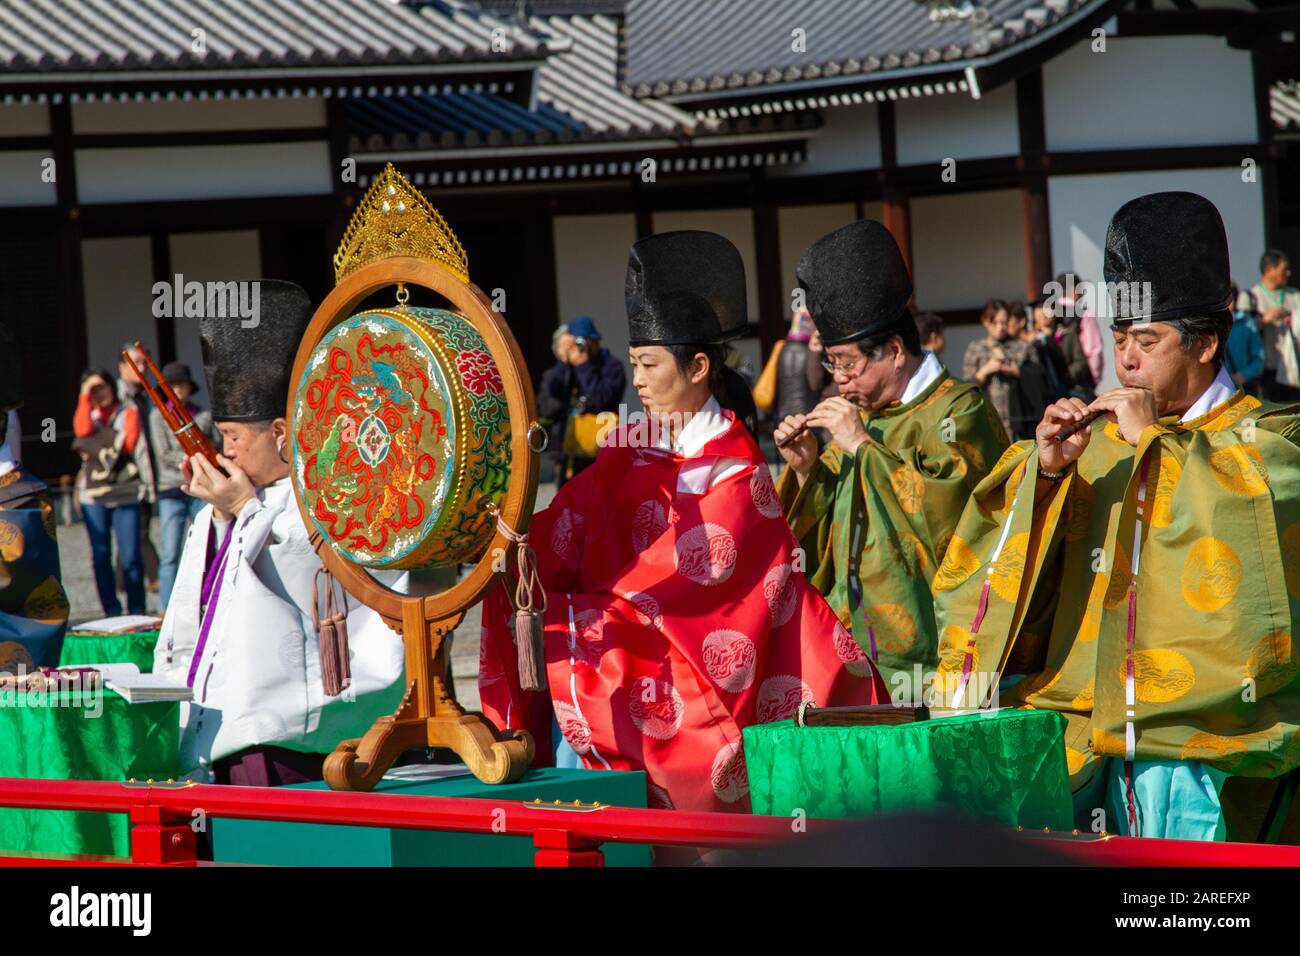 Japon, Kyoto, joueurs de flûte dans le Palais impérial, cérémonie tenue avec des vêtements japonais traditionnels Jidai Matsuri (Festival de l'âge) Banque D'Images